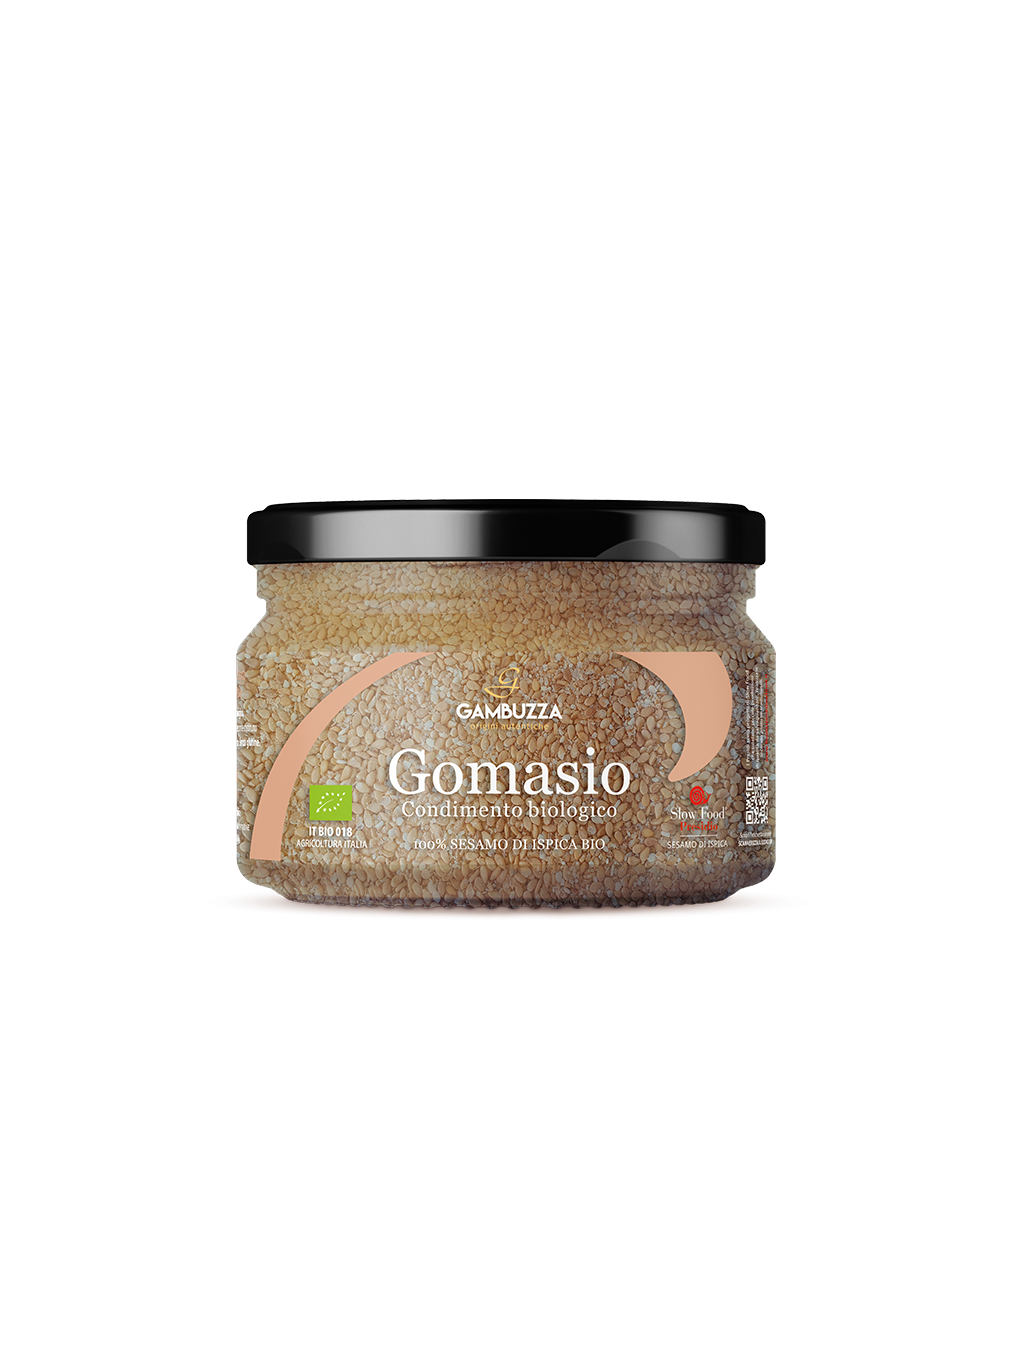 Gomasio - Organic Seasoning 100gr  Gambuzza ® - Organic Italian